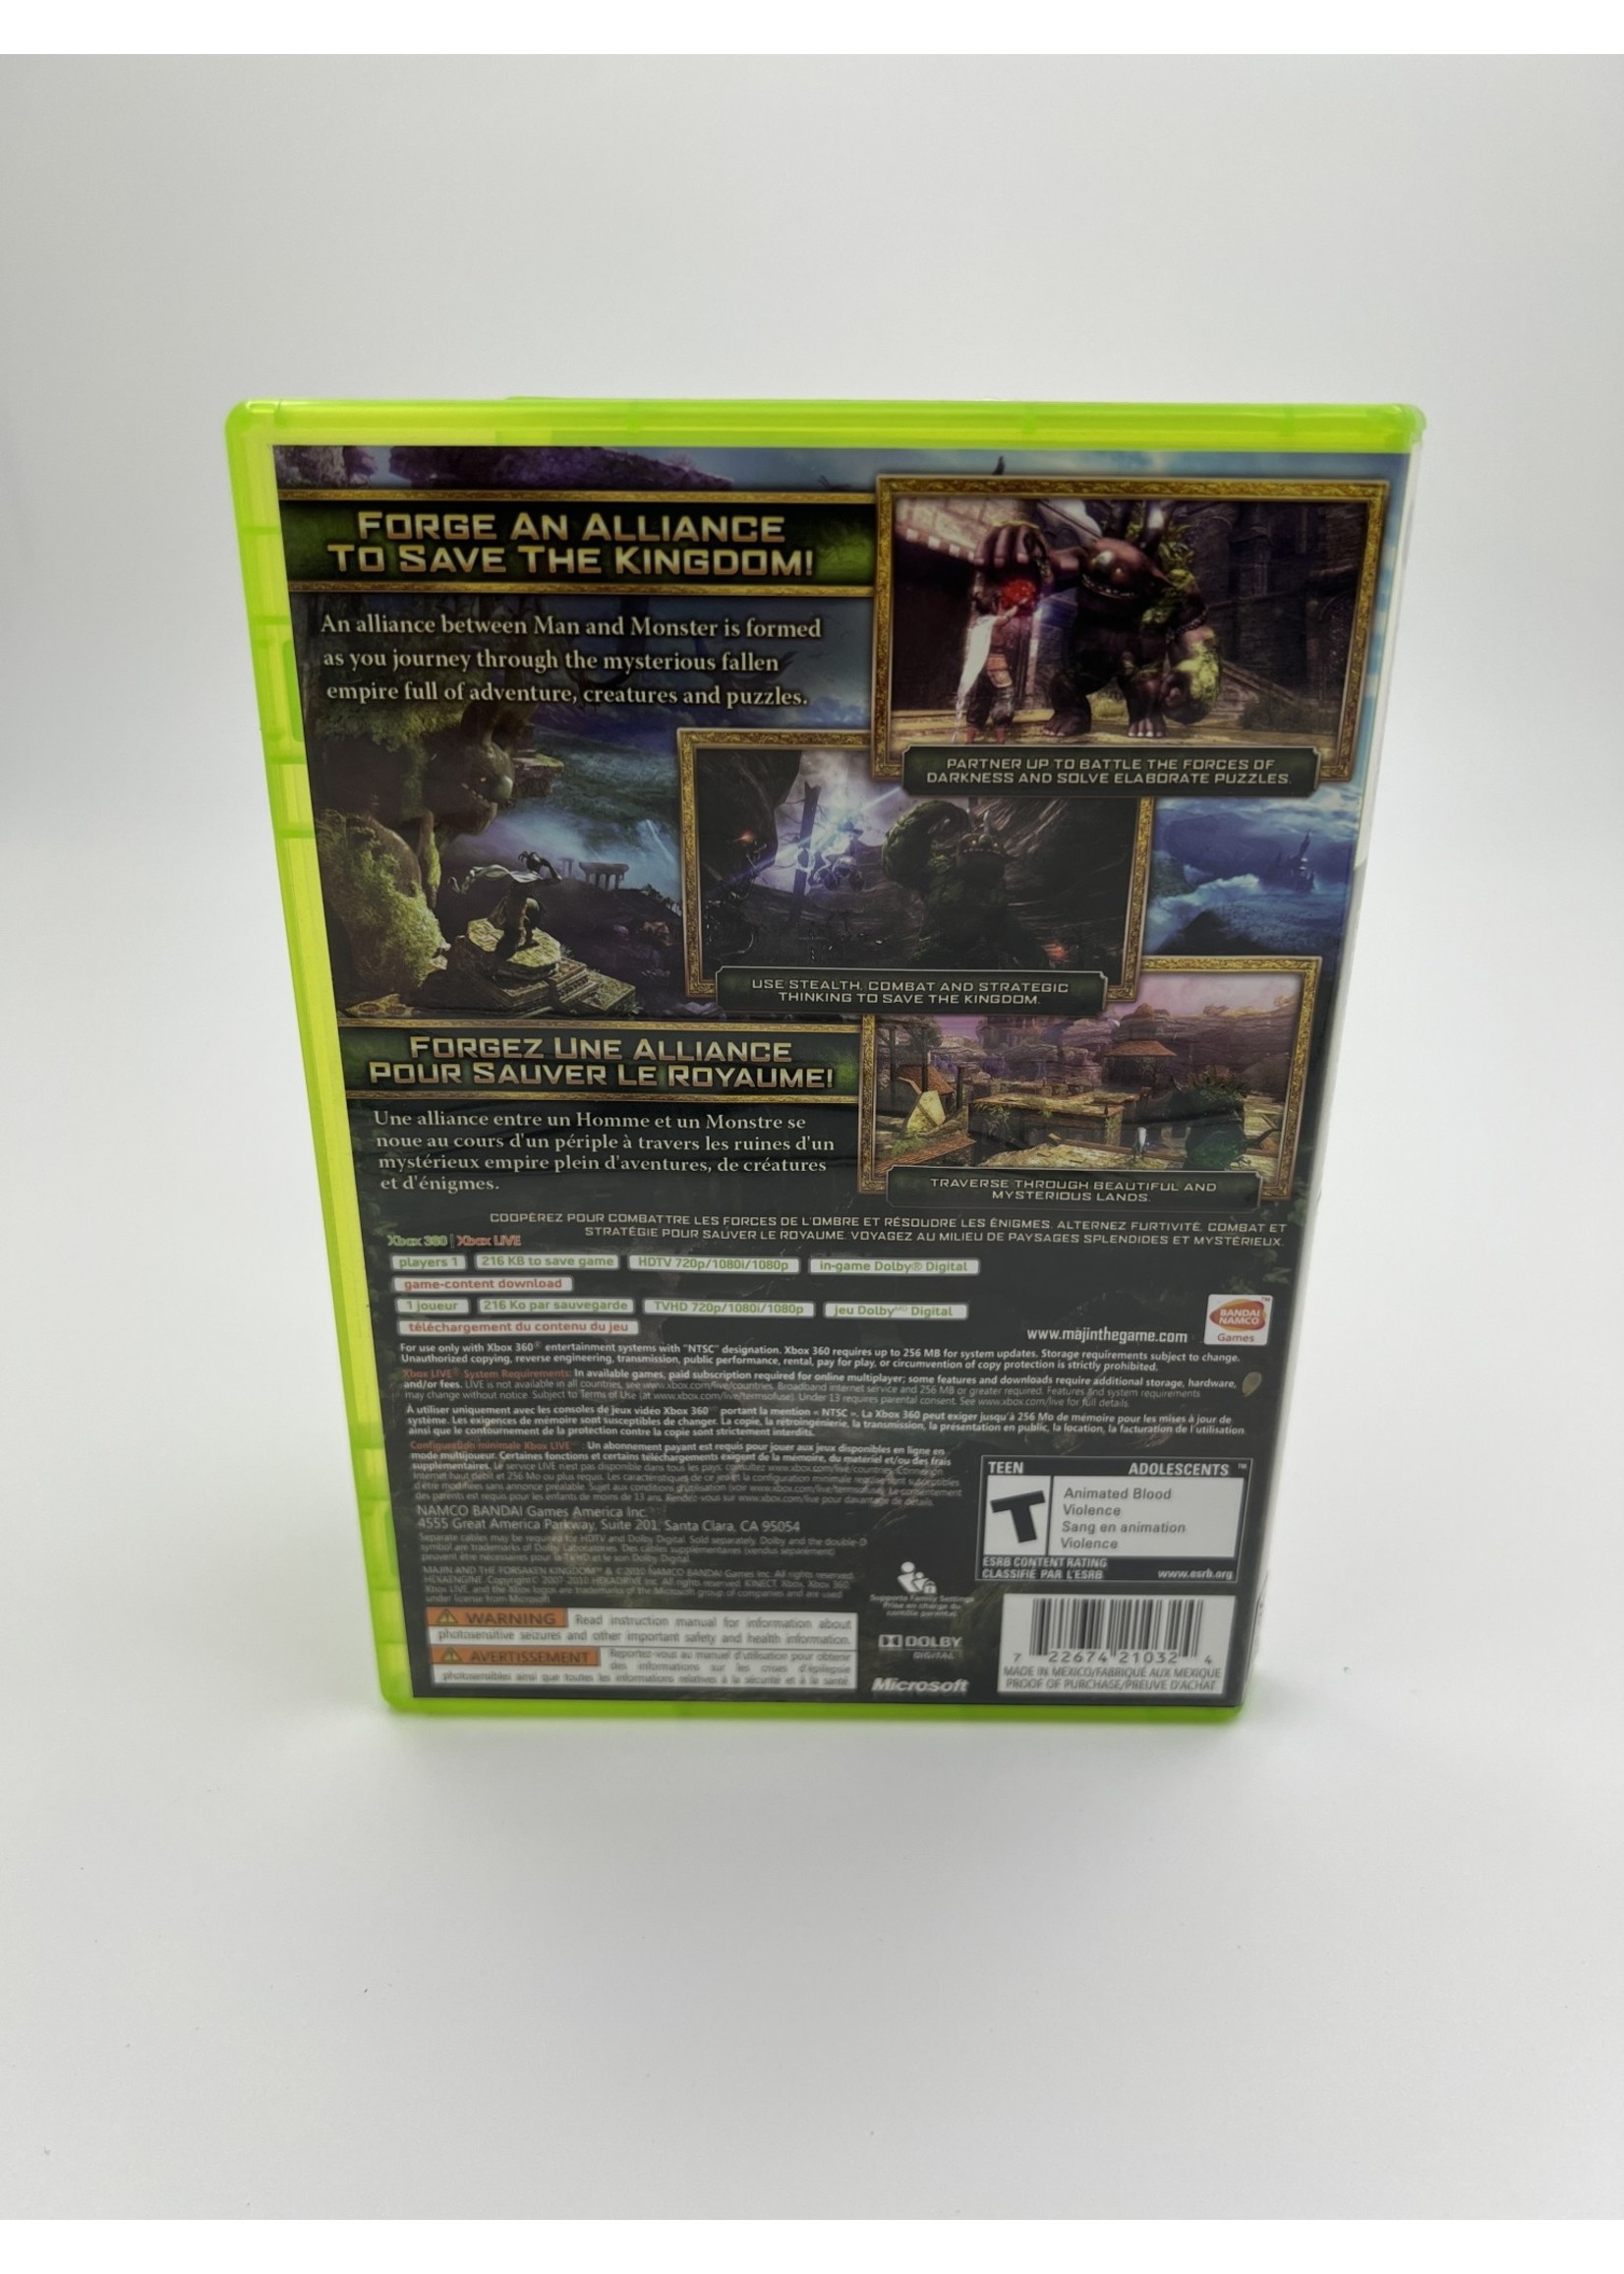 Xbox Majin And The Forsaken Kingdom Xbox 360